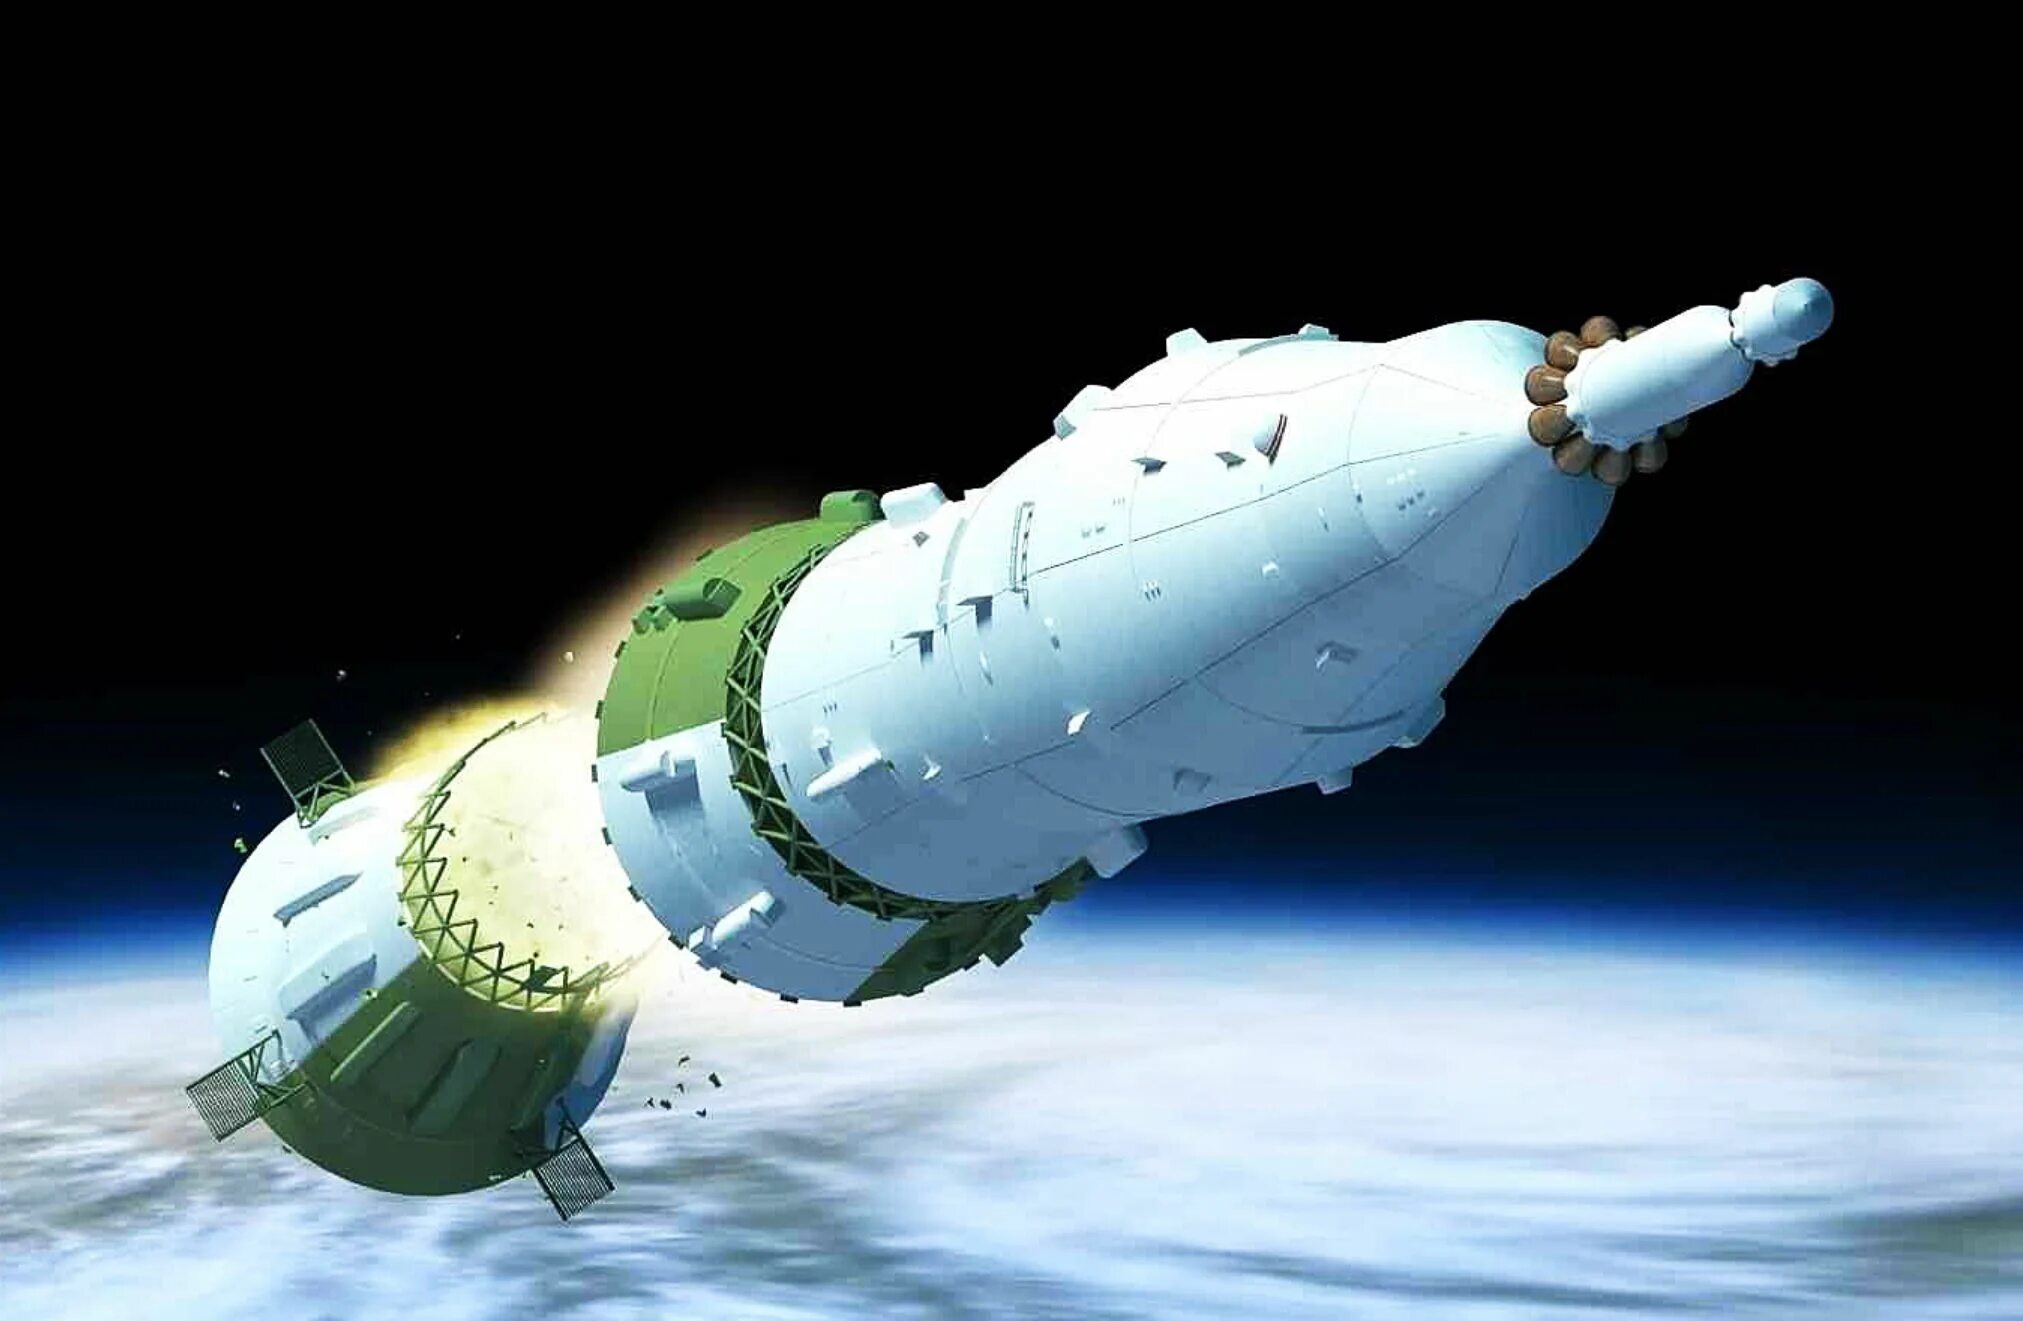 Сверхтяжёлая ракета-носитель Енисей. Советская ракета-носитель сверхтяжёлого класса н-1. Сверхтяжелая ракета Енисей. Лунная ракета н-1.